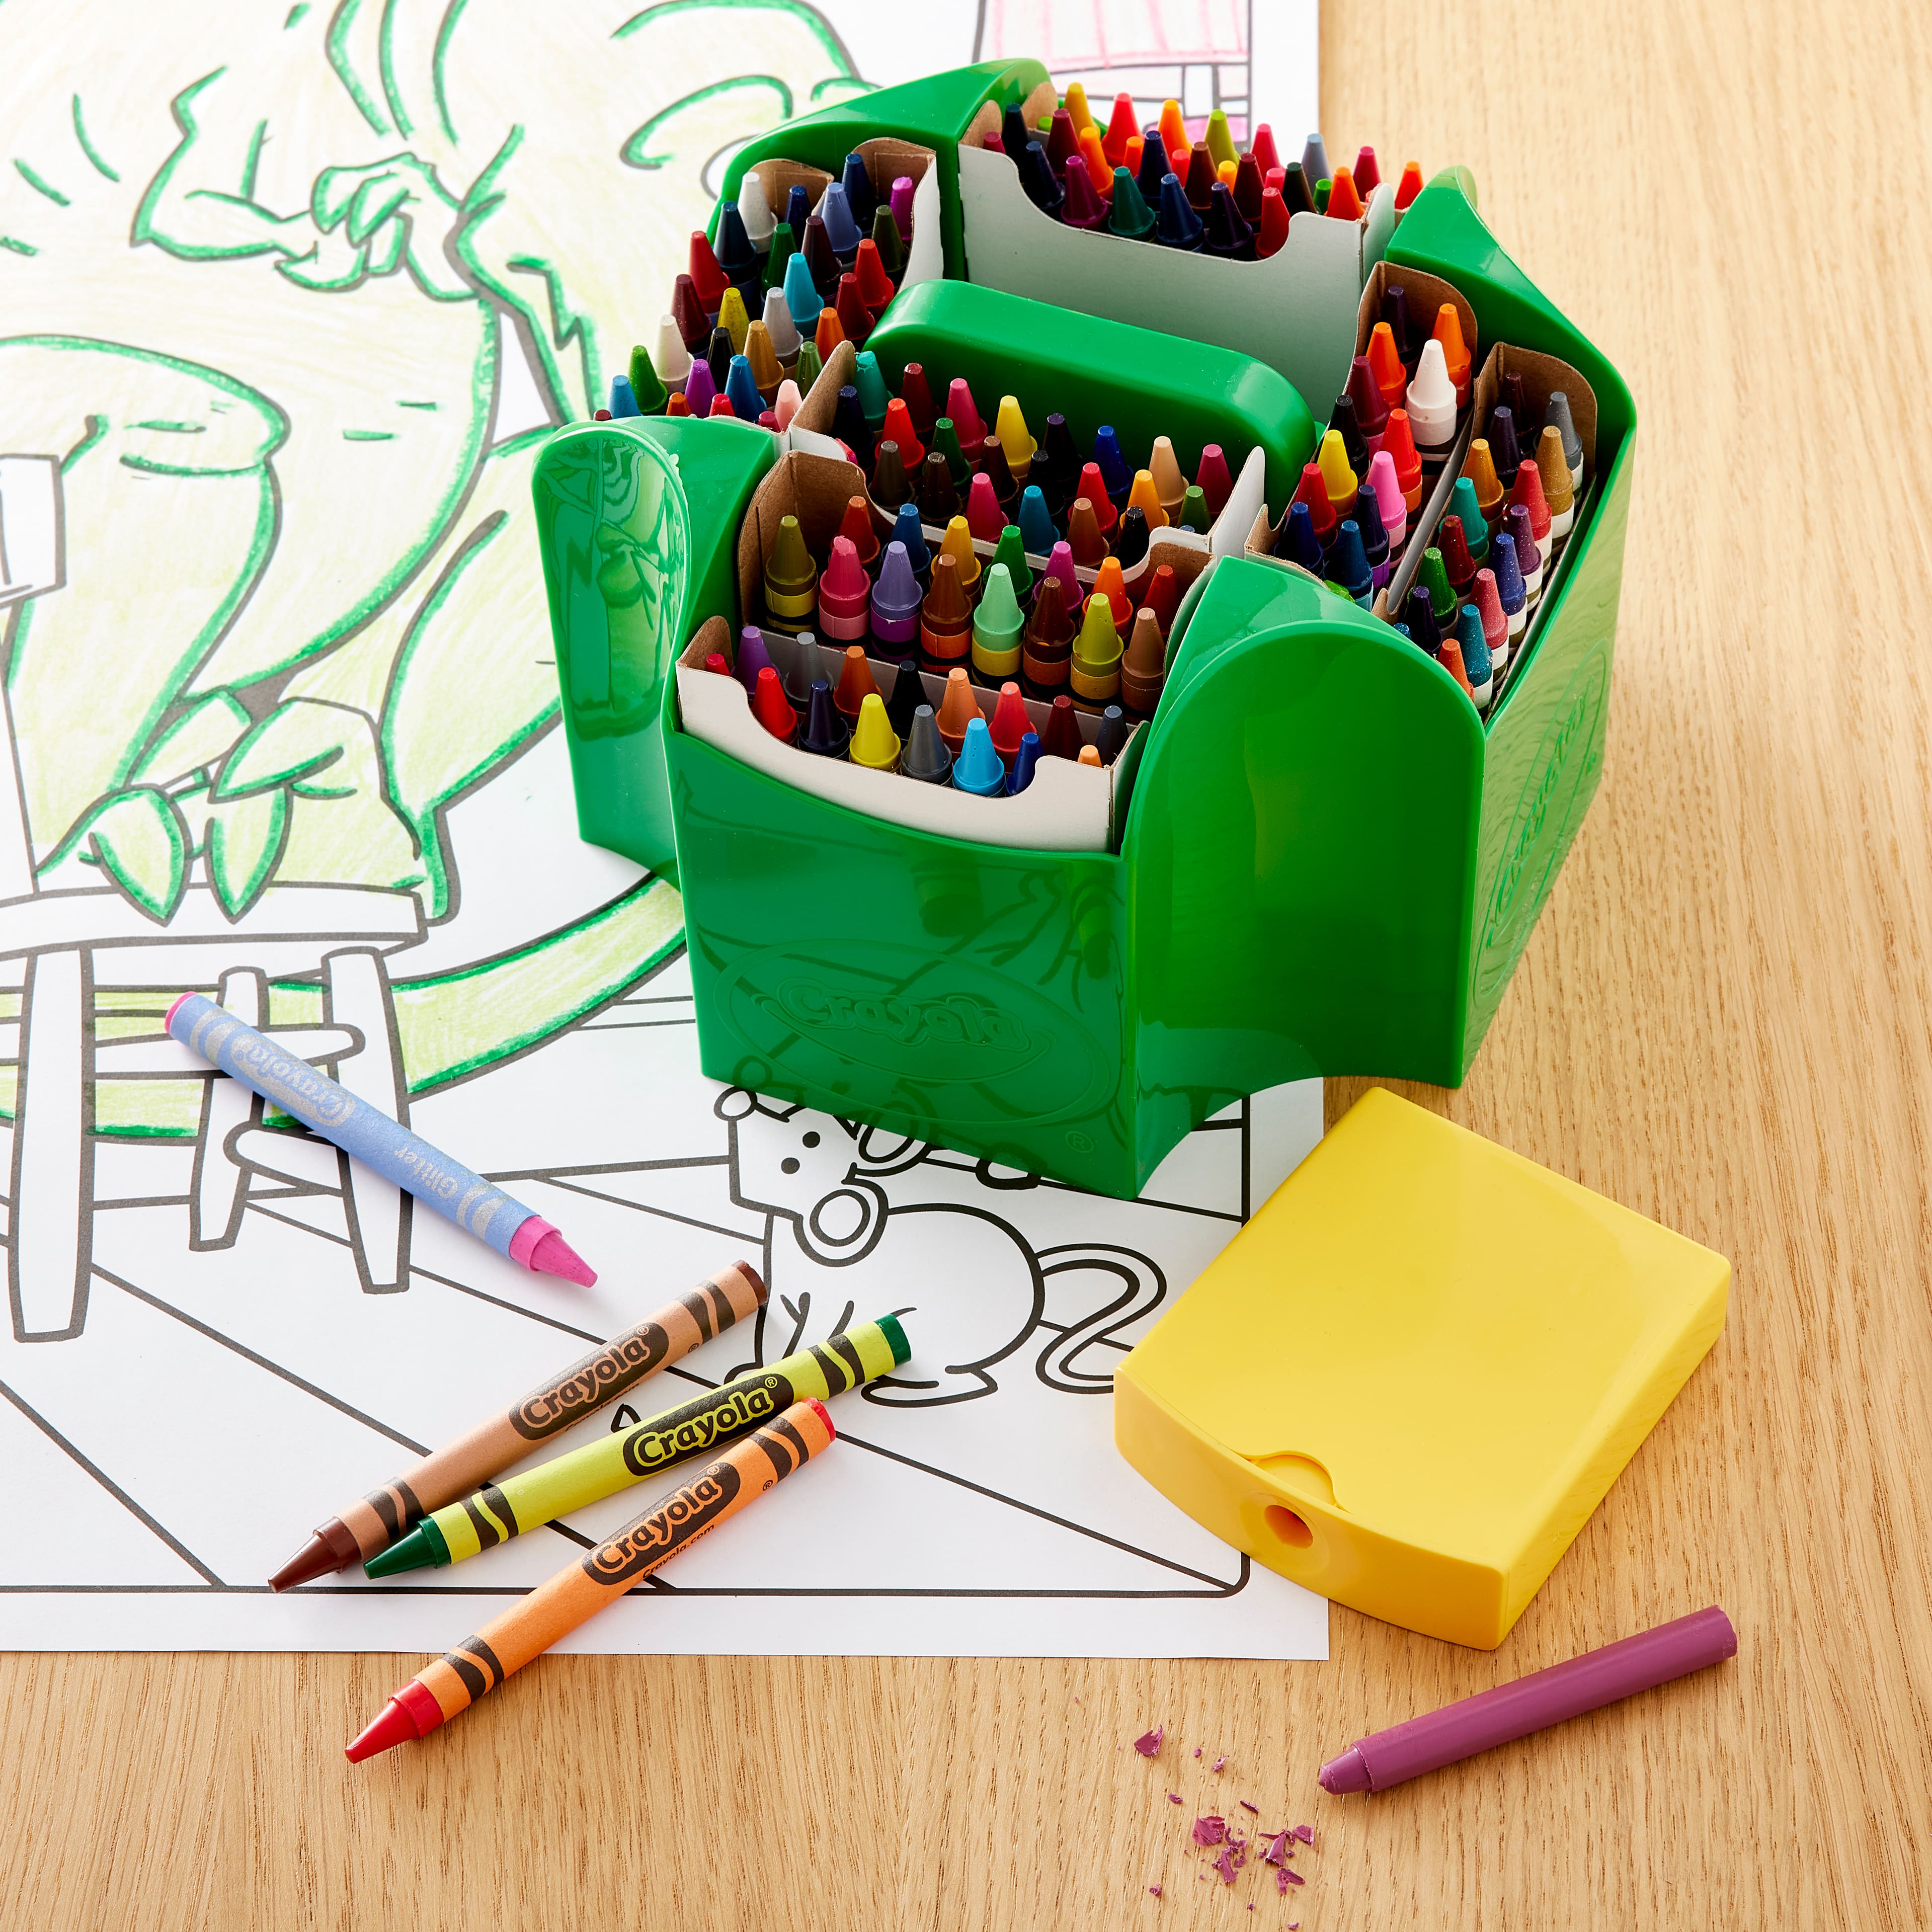 Crayon holder, wooden crayon holder, crayon organizer, crayon storage –  SensoryPlay Store